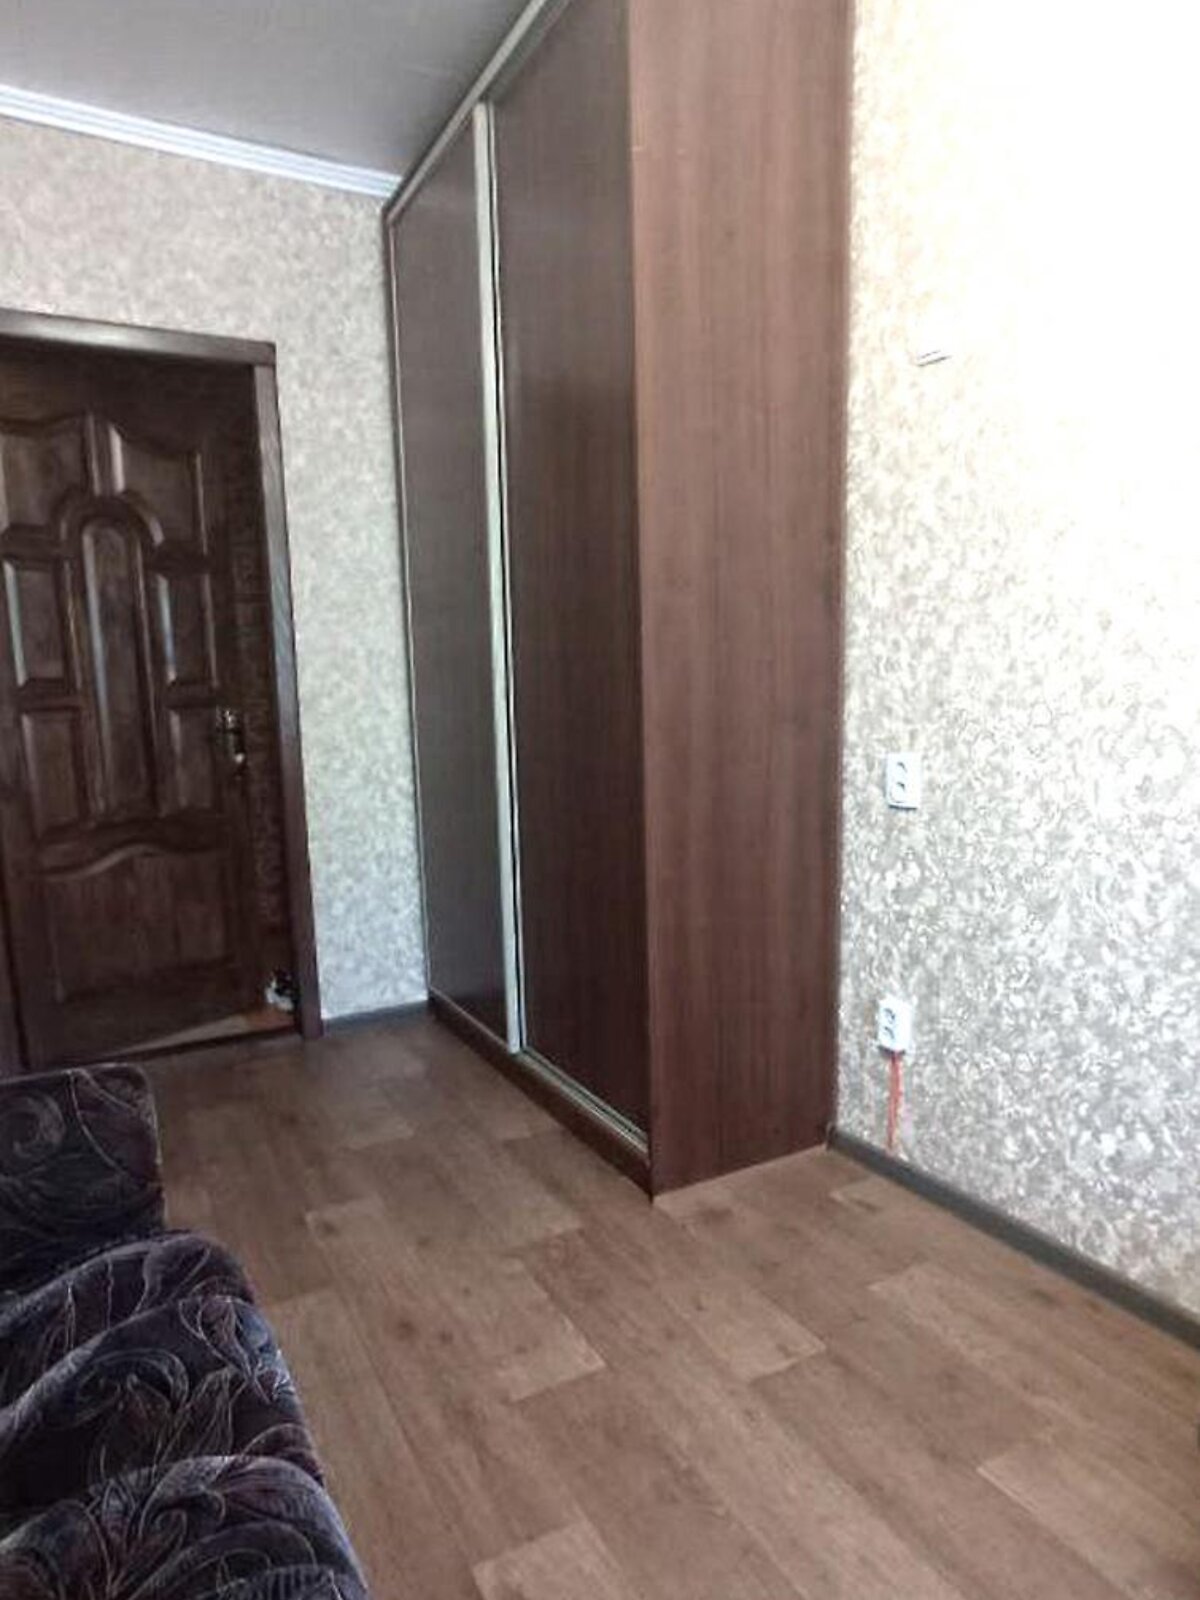 Комната в Харькове, на ул. Шекспира 13 в районе Павлово Поле на продажу фото 1